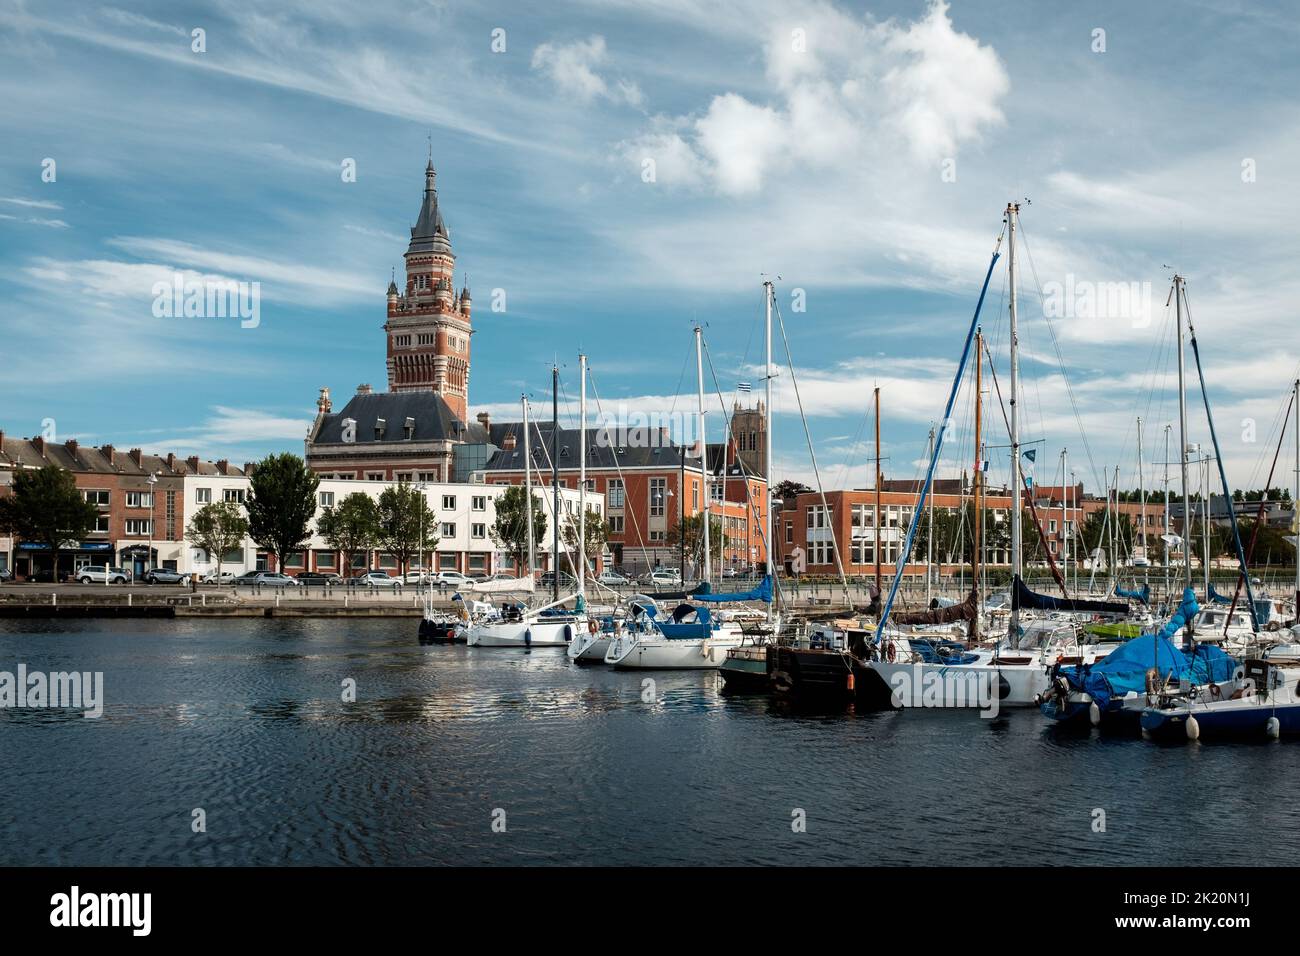 Dunkirk, Frankreich - 26. Juli 2020: Blick auf das Rathaus und den Glockenturm von der Marina 'Bassin du Commerce' Stockfoto